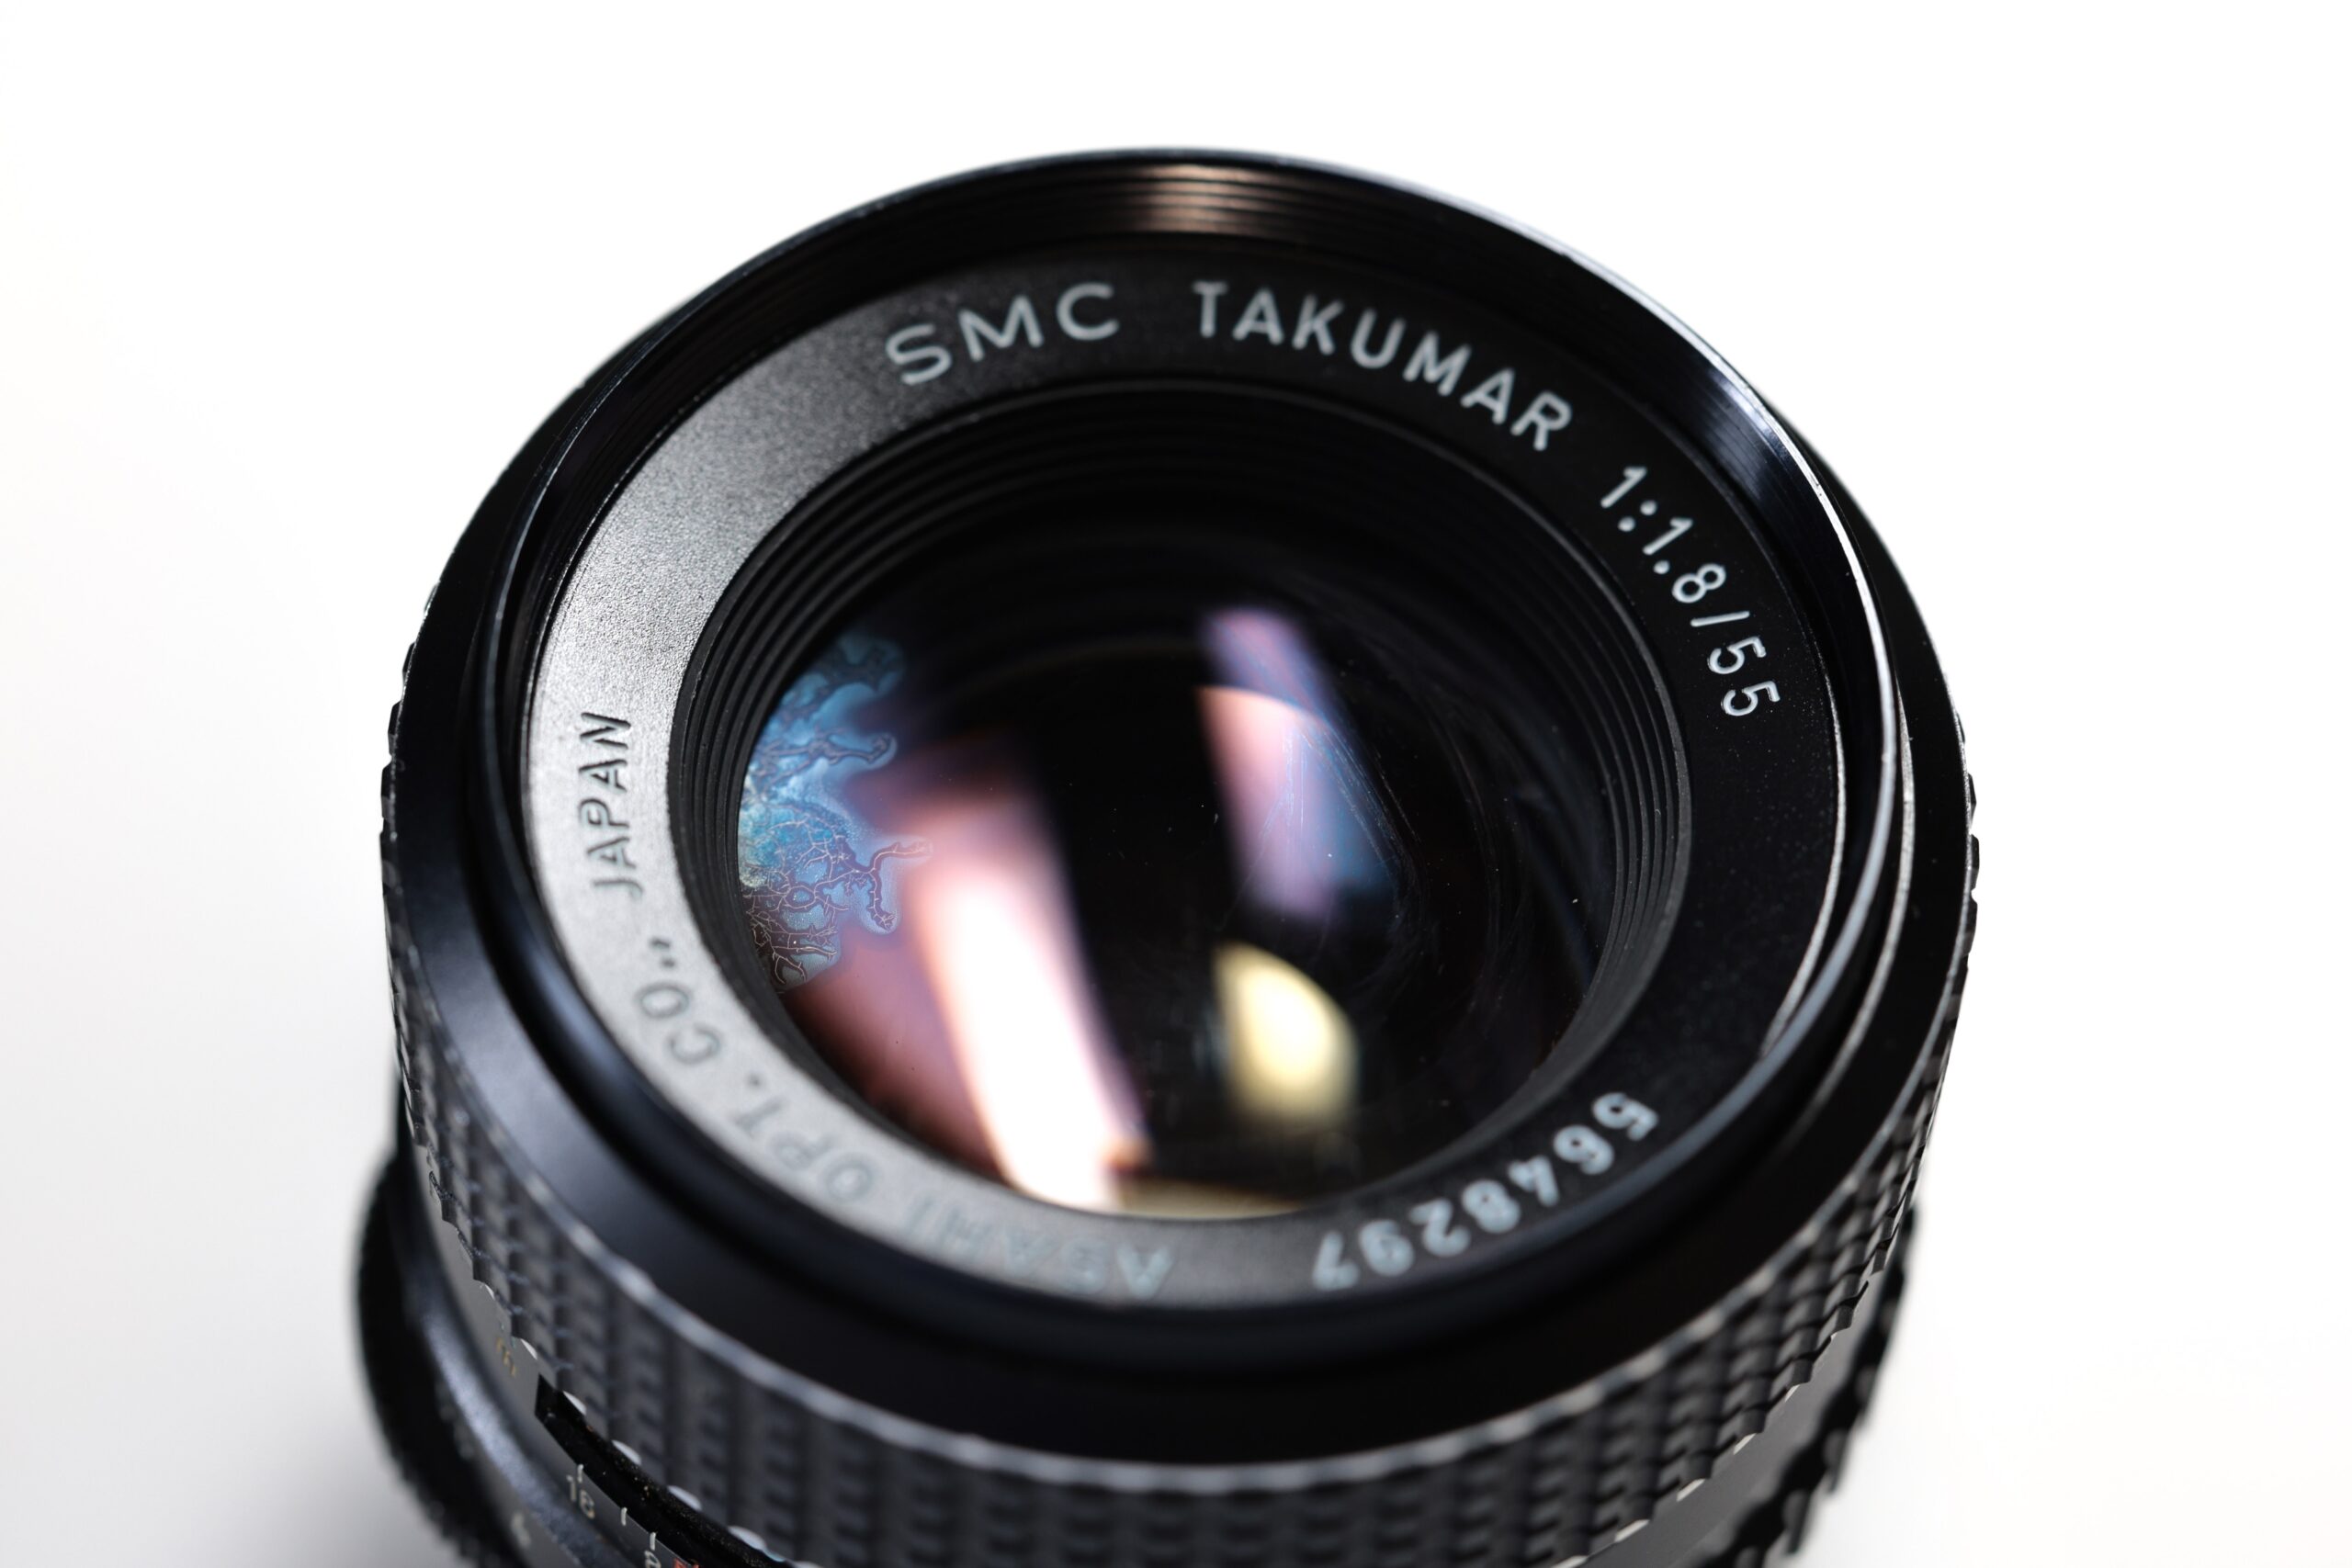 オールドレンズ】「ペンタックス スーパータクマー55mm F1.8」とジャンク品 「SMC タクマー 55mm F1.8 」を比べてみました | 新宿  北村写真機店